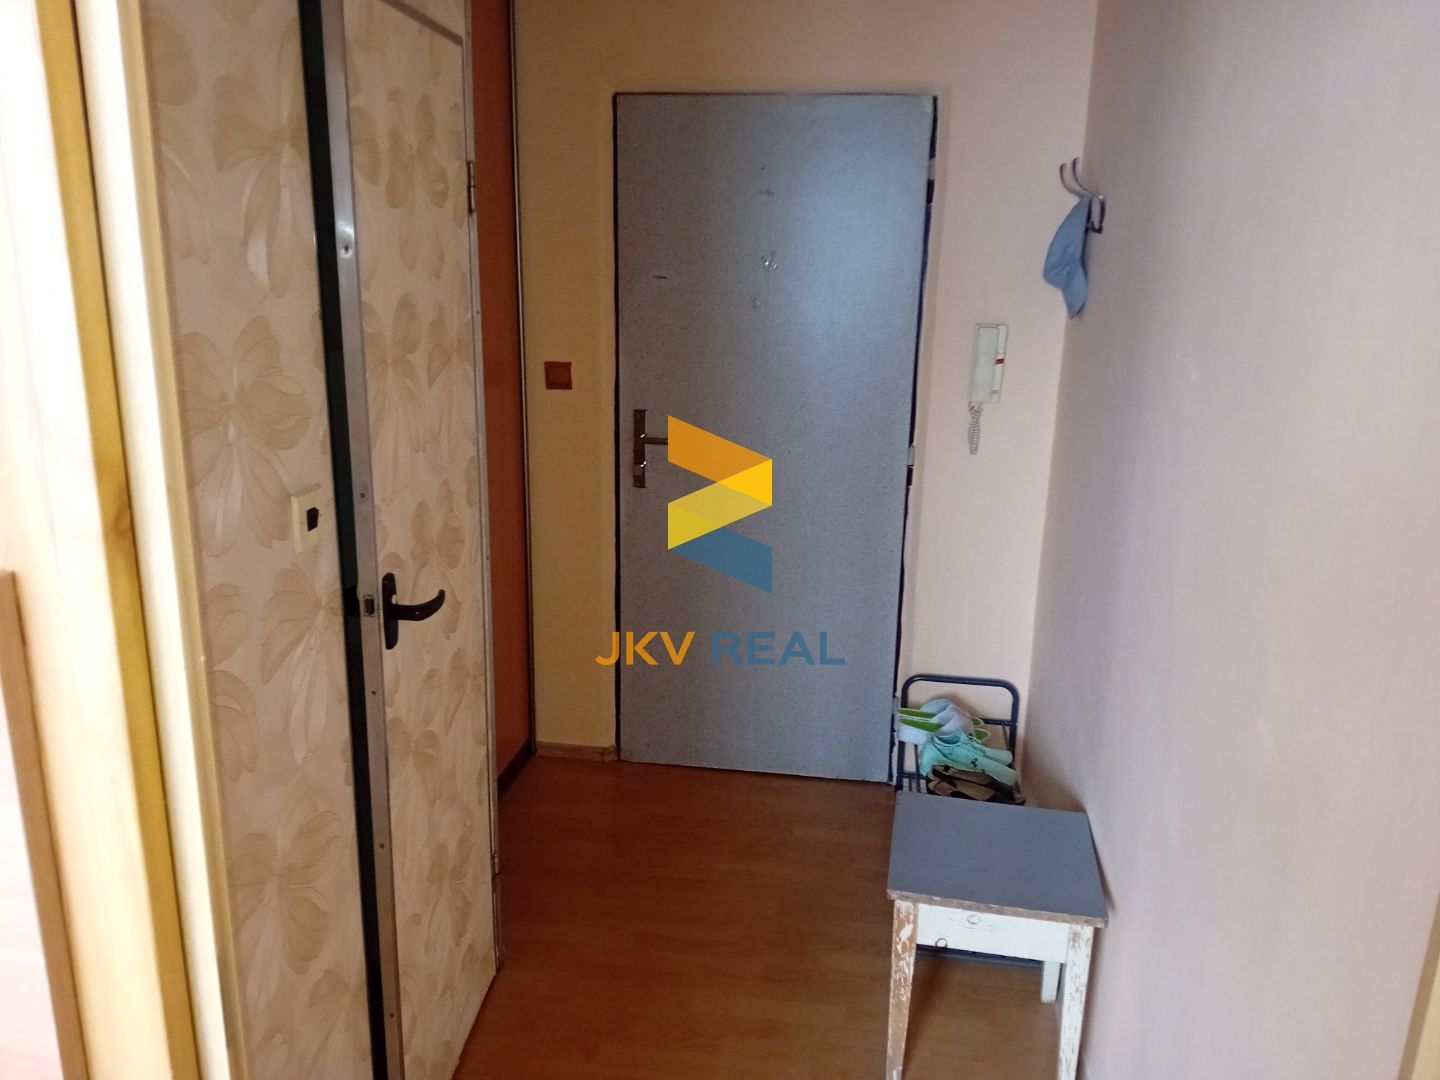 Ponúkame Vám na prenájom 1 izbový byt v Trebišove, ulica M.R. Štefánika v centre mesta